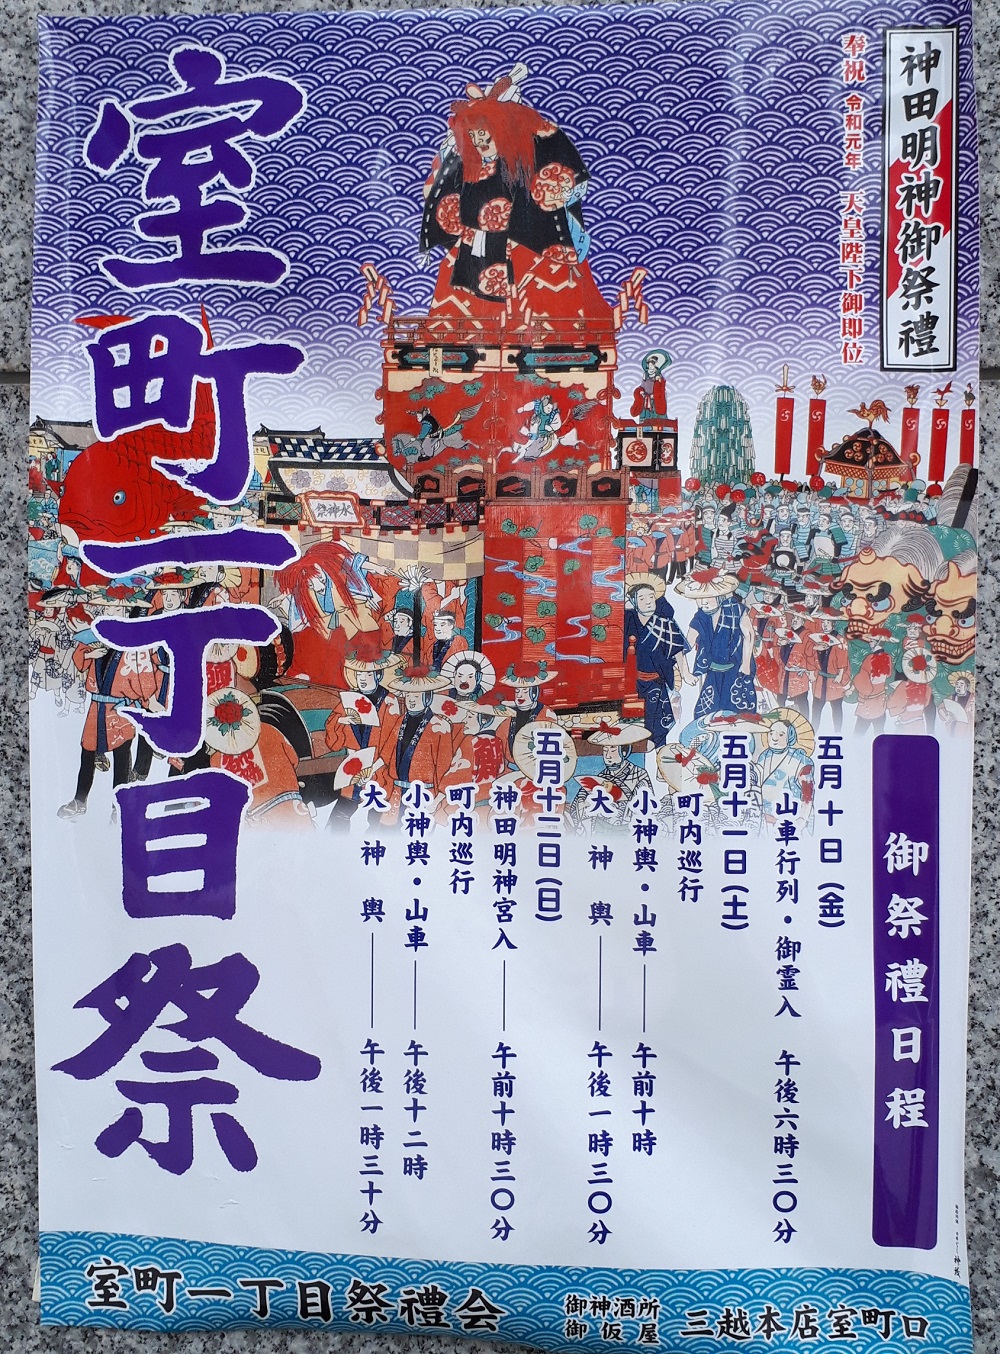 中央区と千代田区のポスターの傾向 神田祭とポスターあれこれ